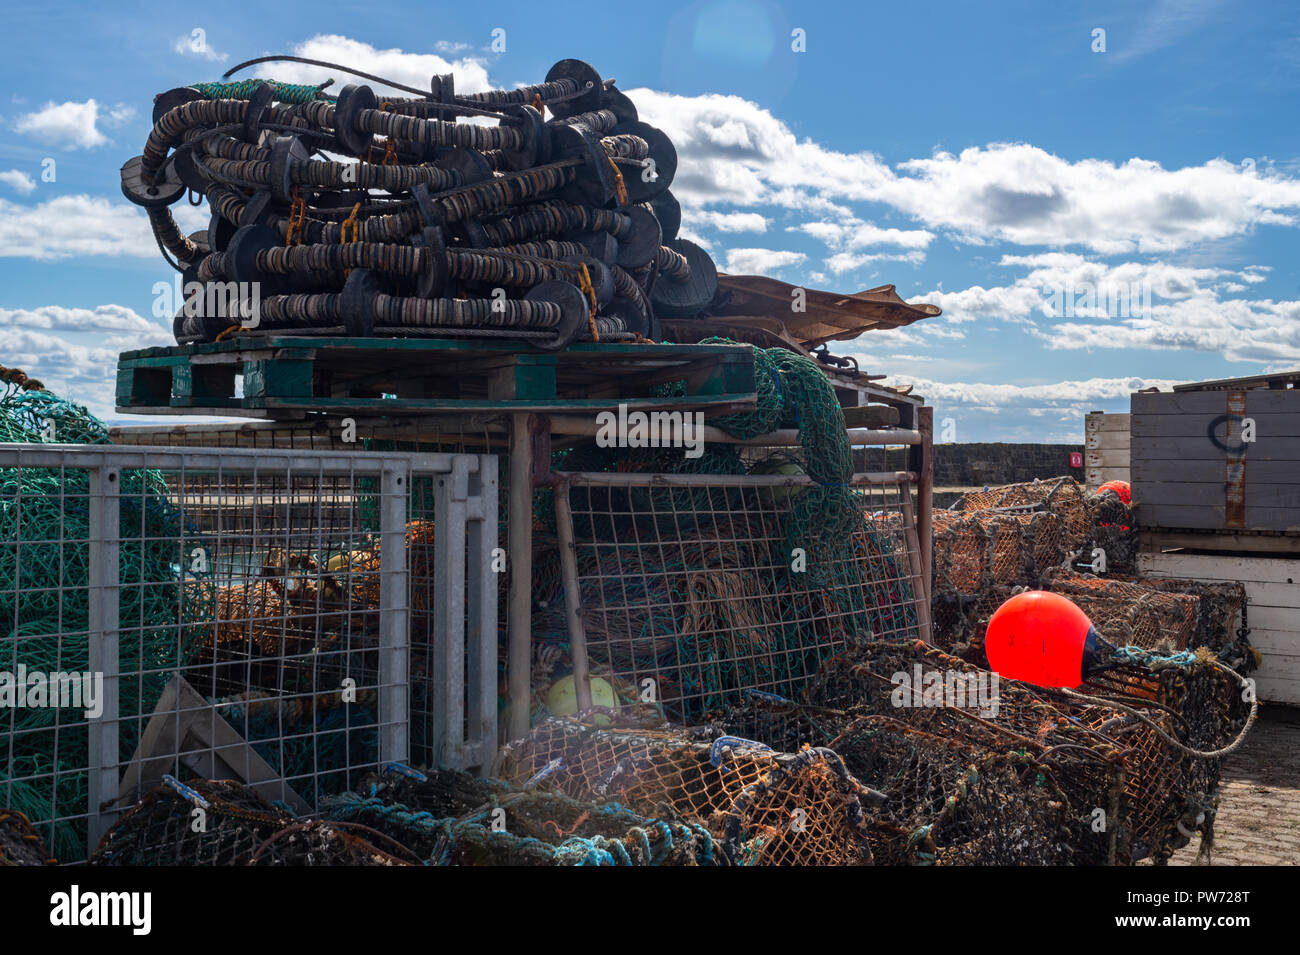 Le séchage des filets et engins de pêche au port historique de Pittenweem, Fife, Scotland, United Kingdom Banque D'Images